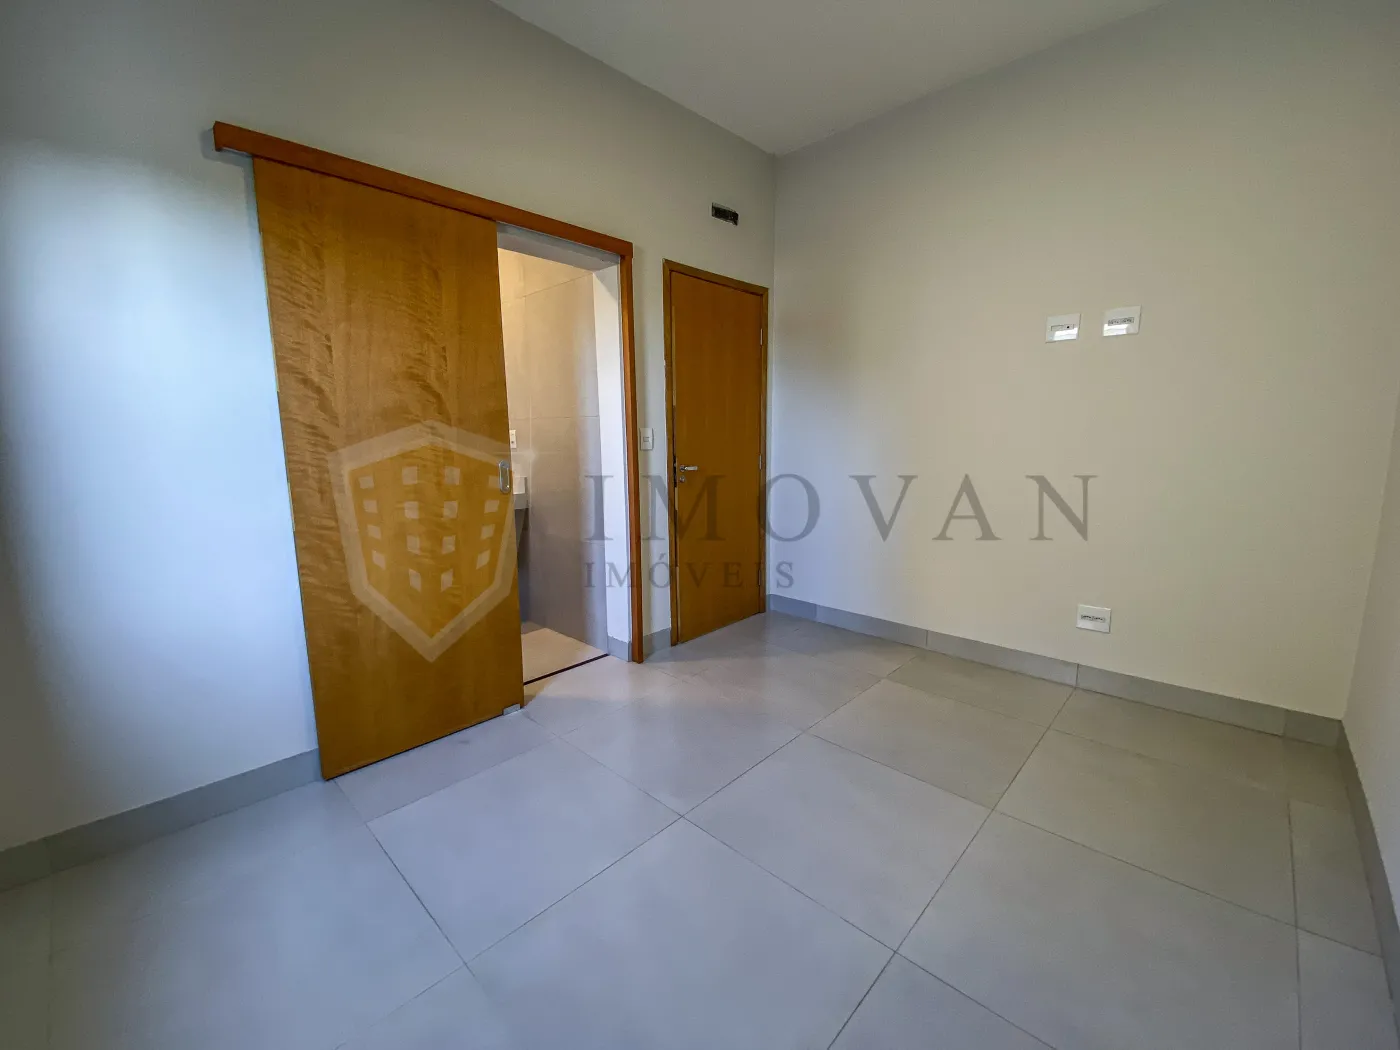 Comprar Casa / Condomínio em Ribeirão Preto R$ 820.000,00 - Foto 10